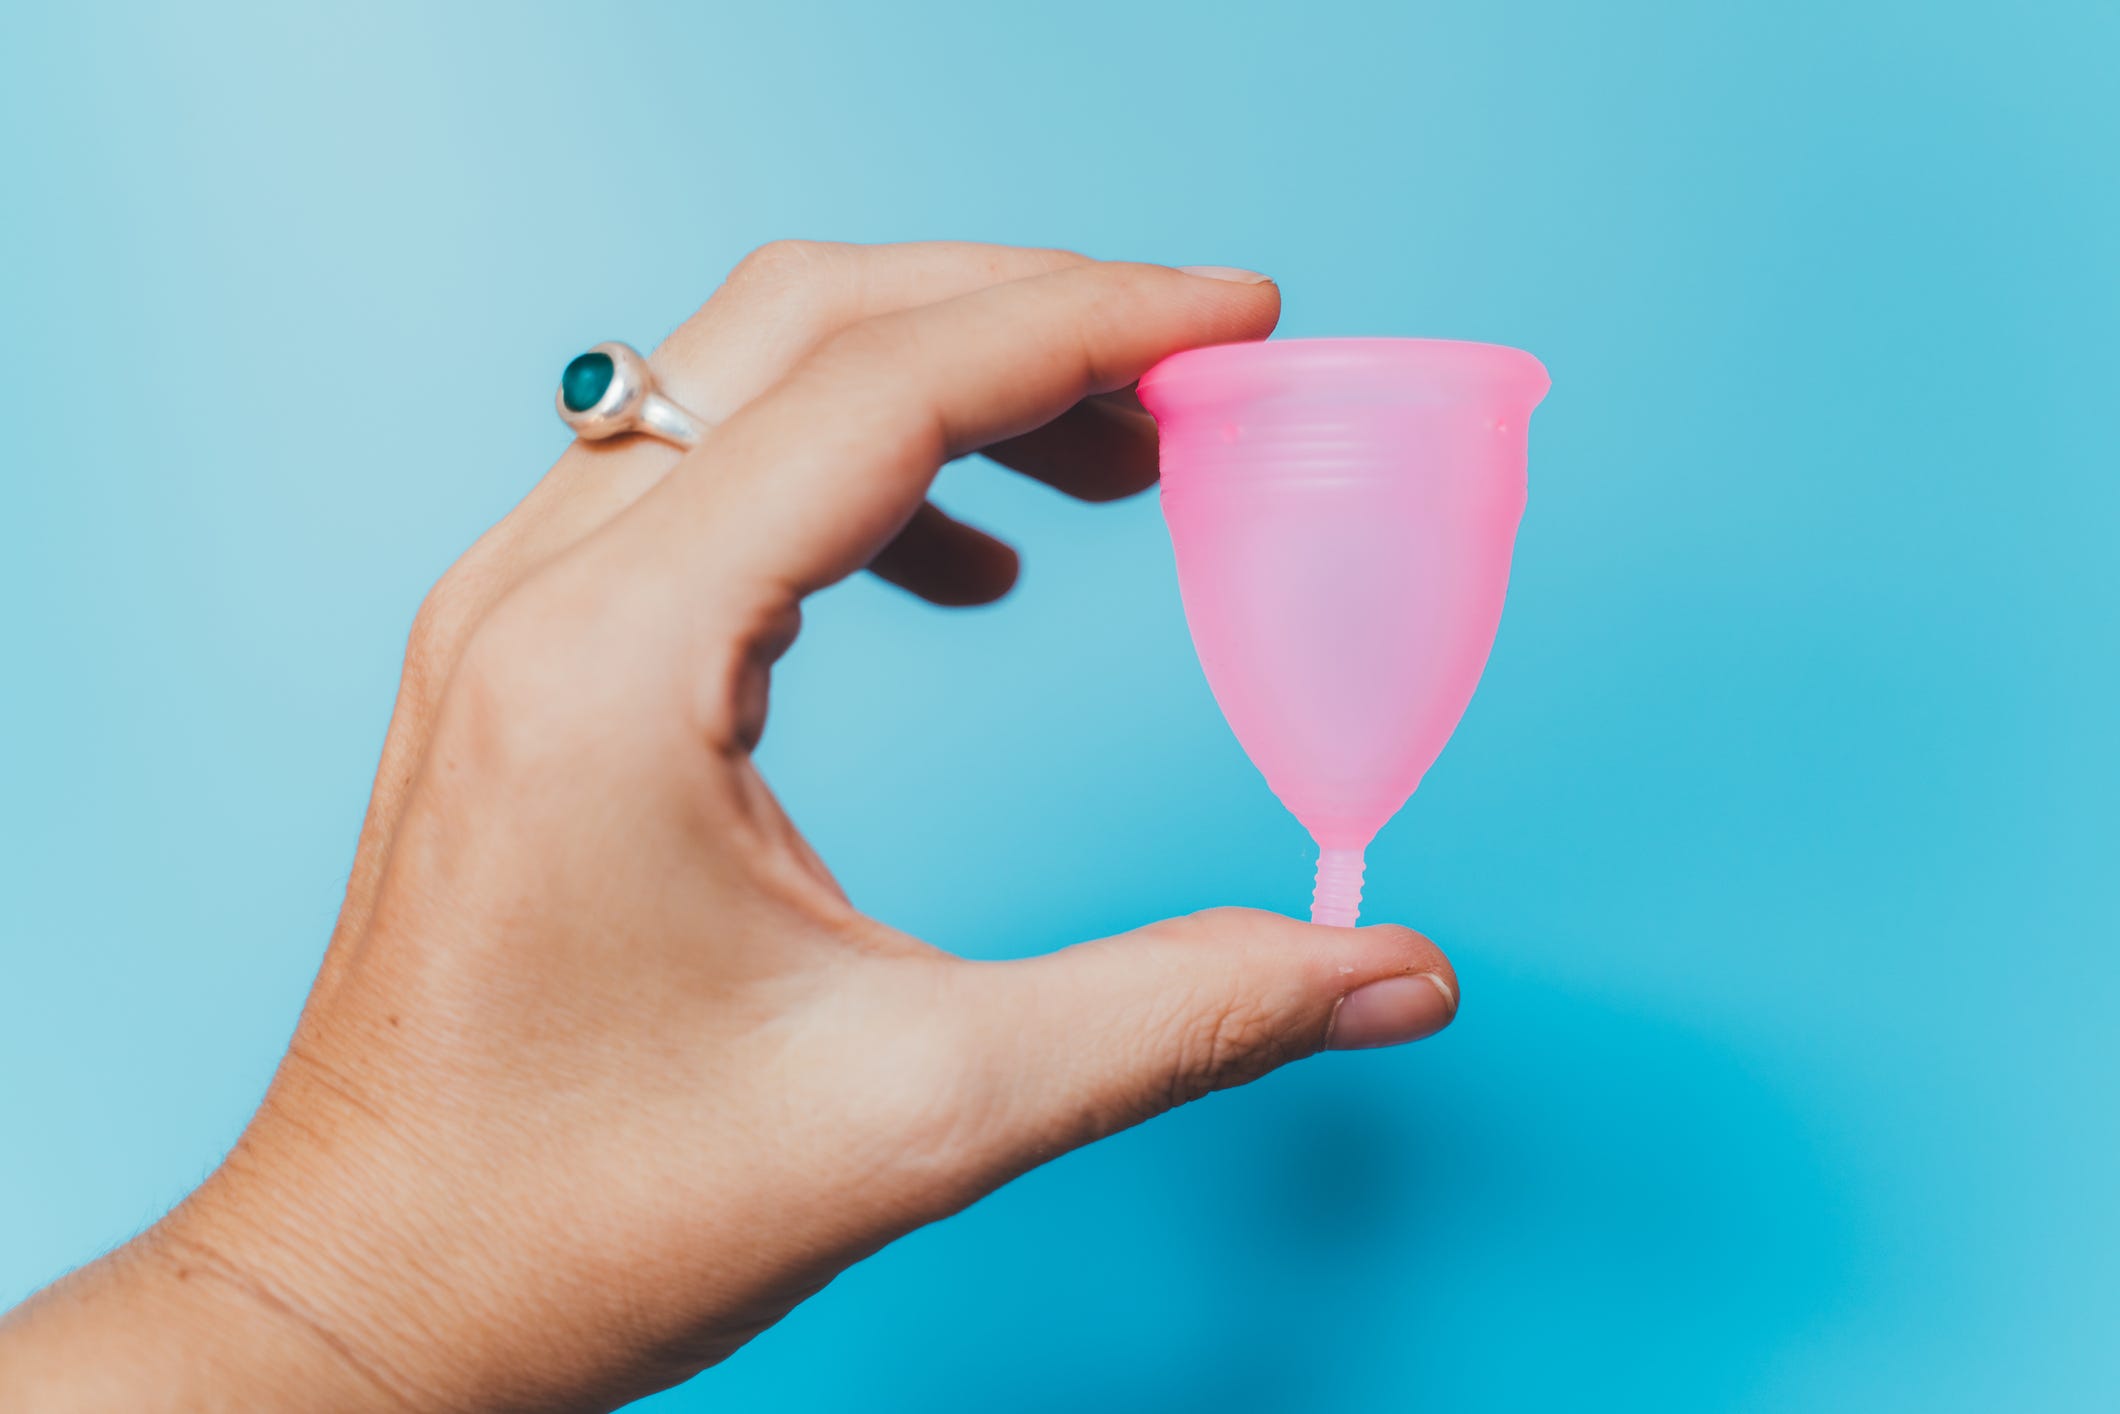 La ciencia apoya el uso de la copa menstrual para proteger el medio ambiente